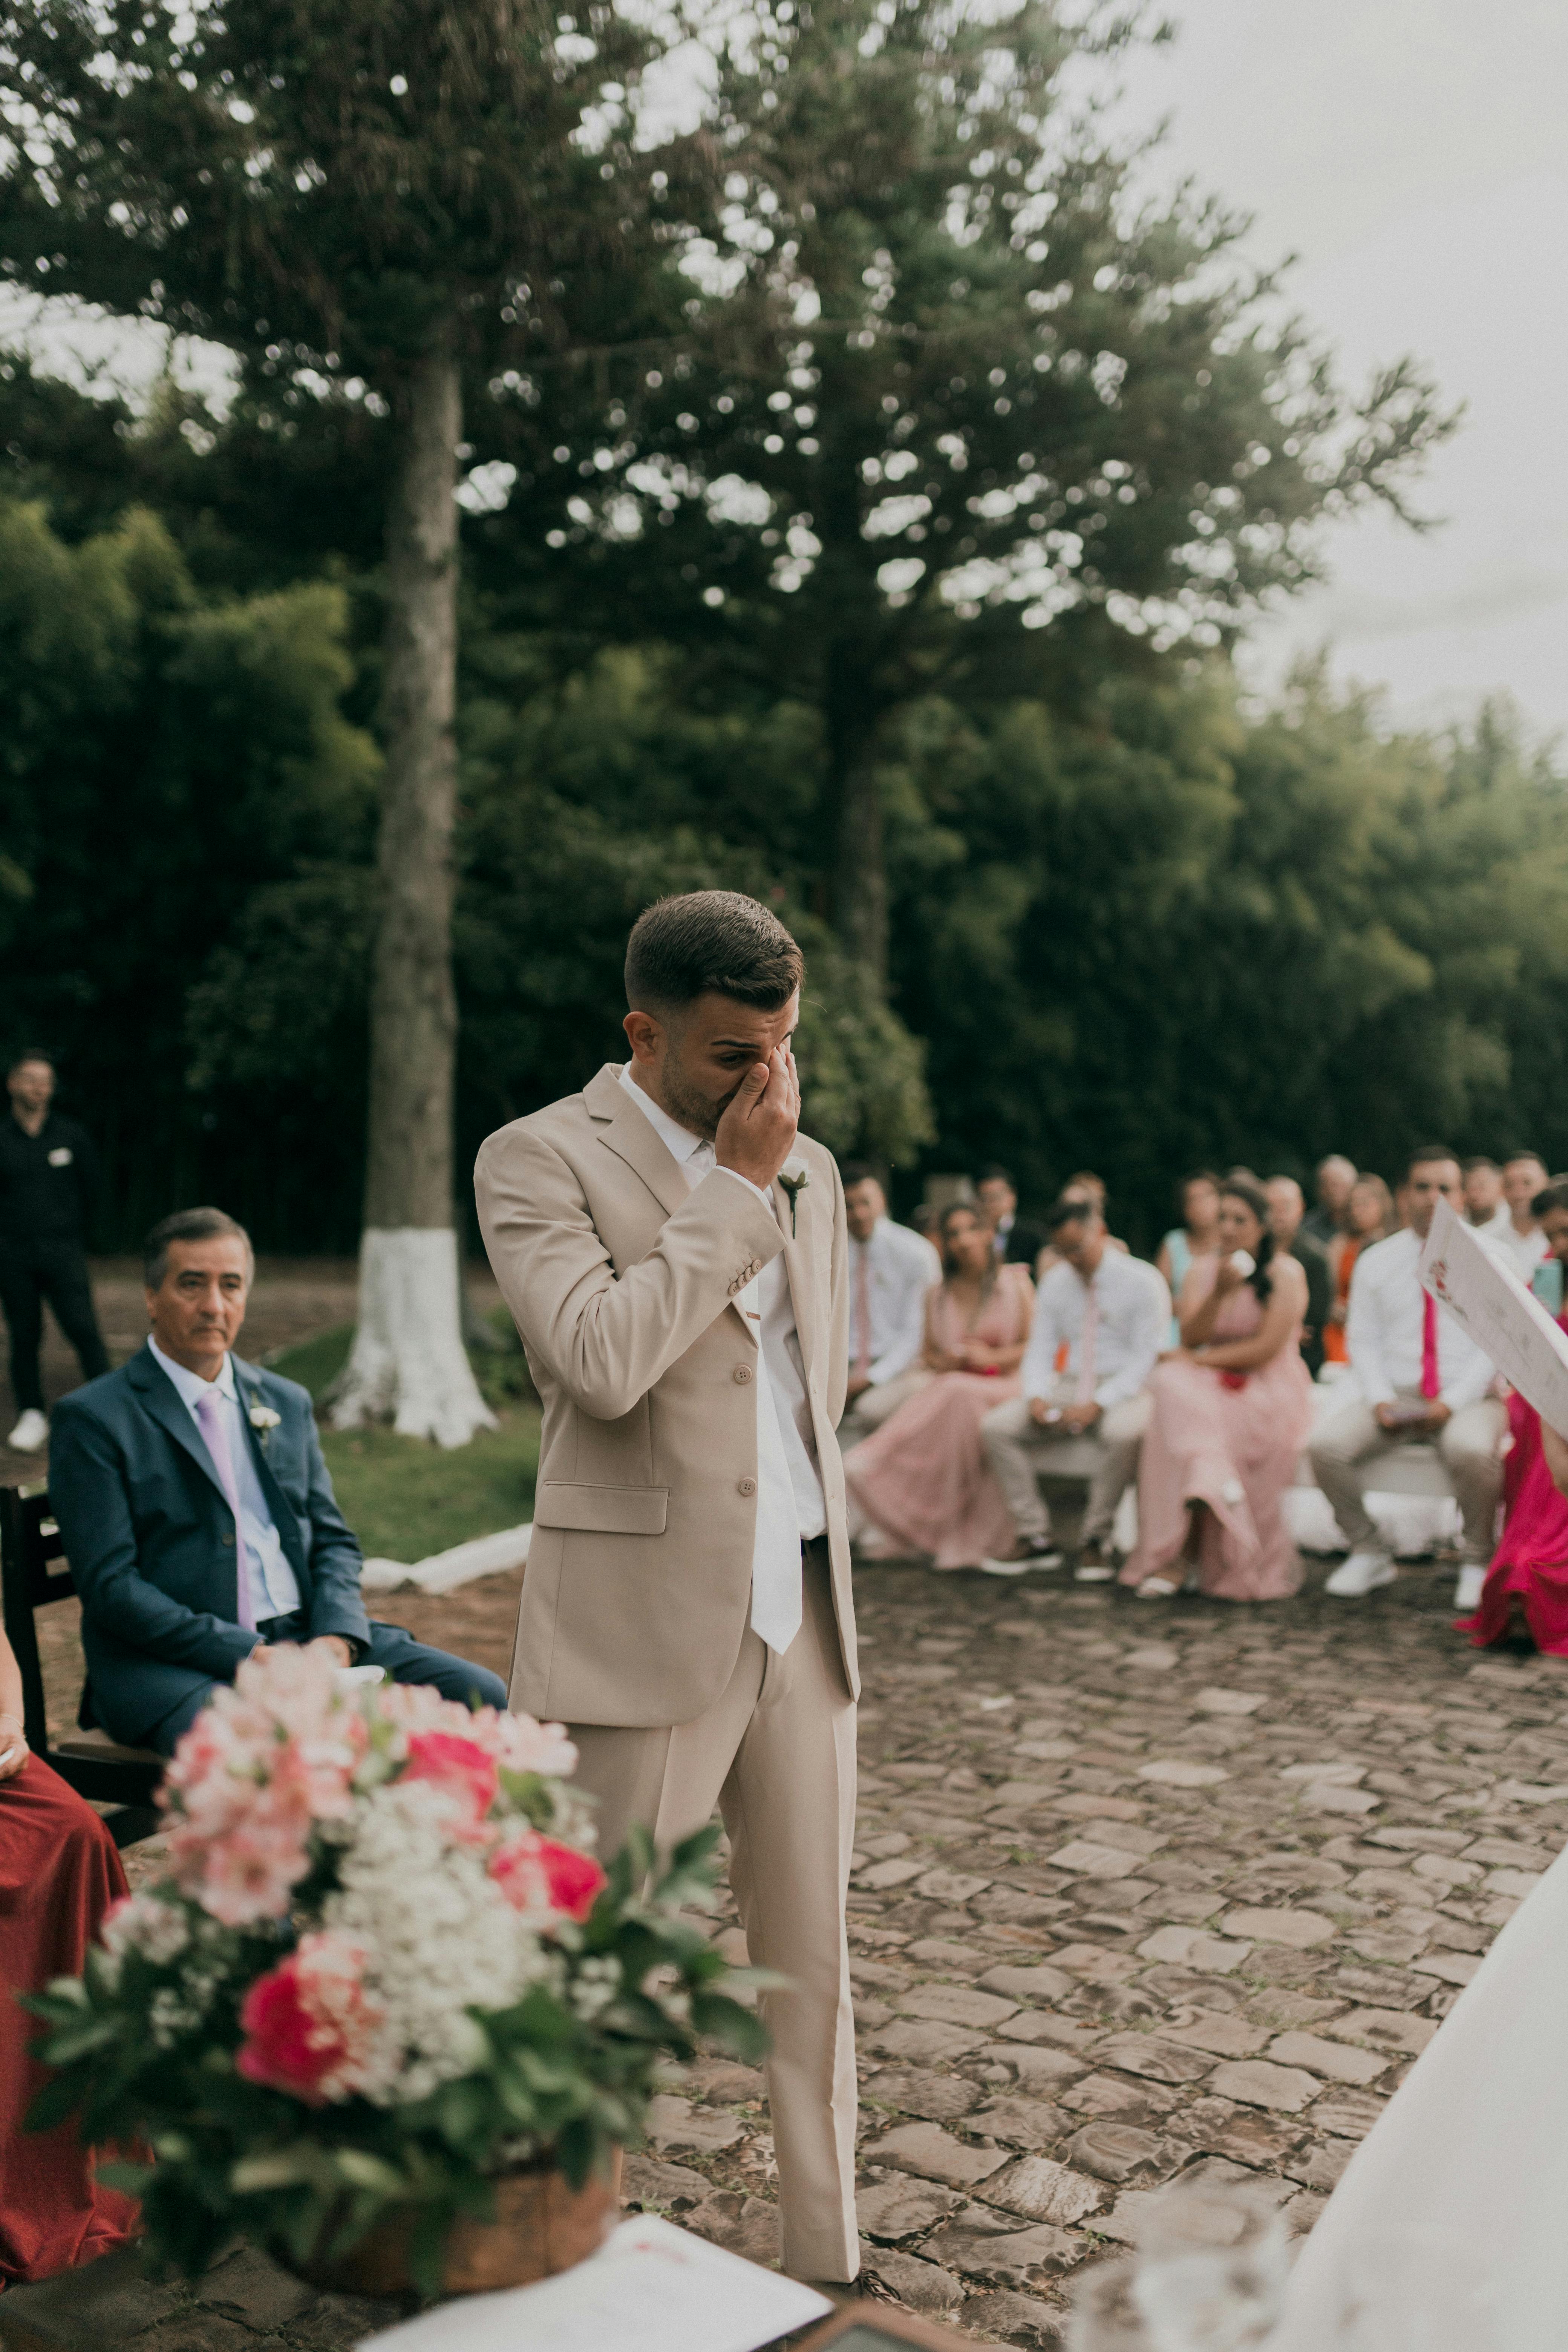 Un novio frustrado y molesto en su boda | Fuente: Pexels